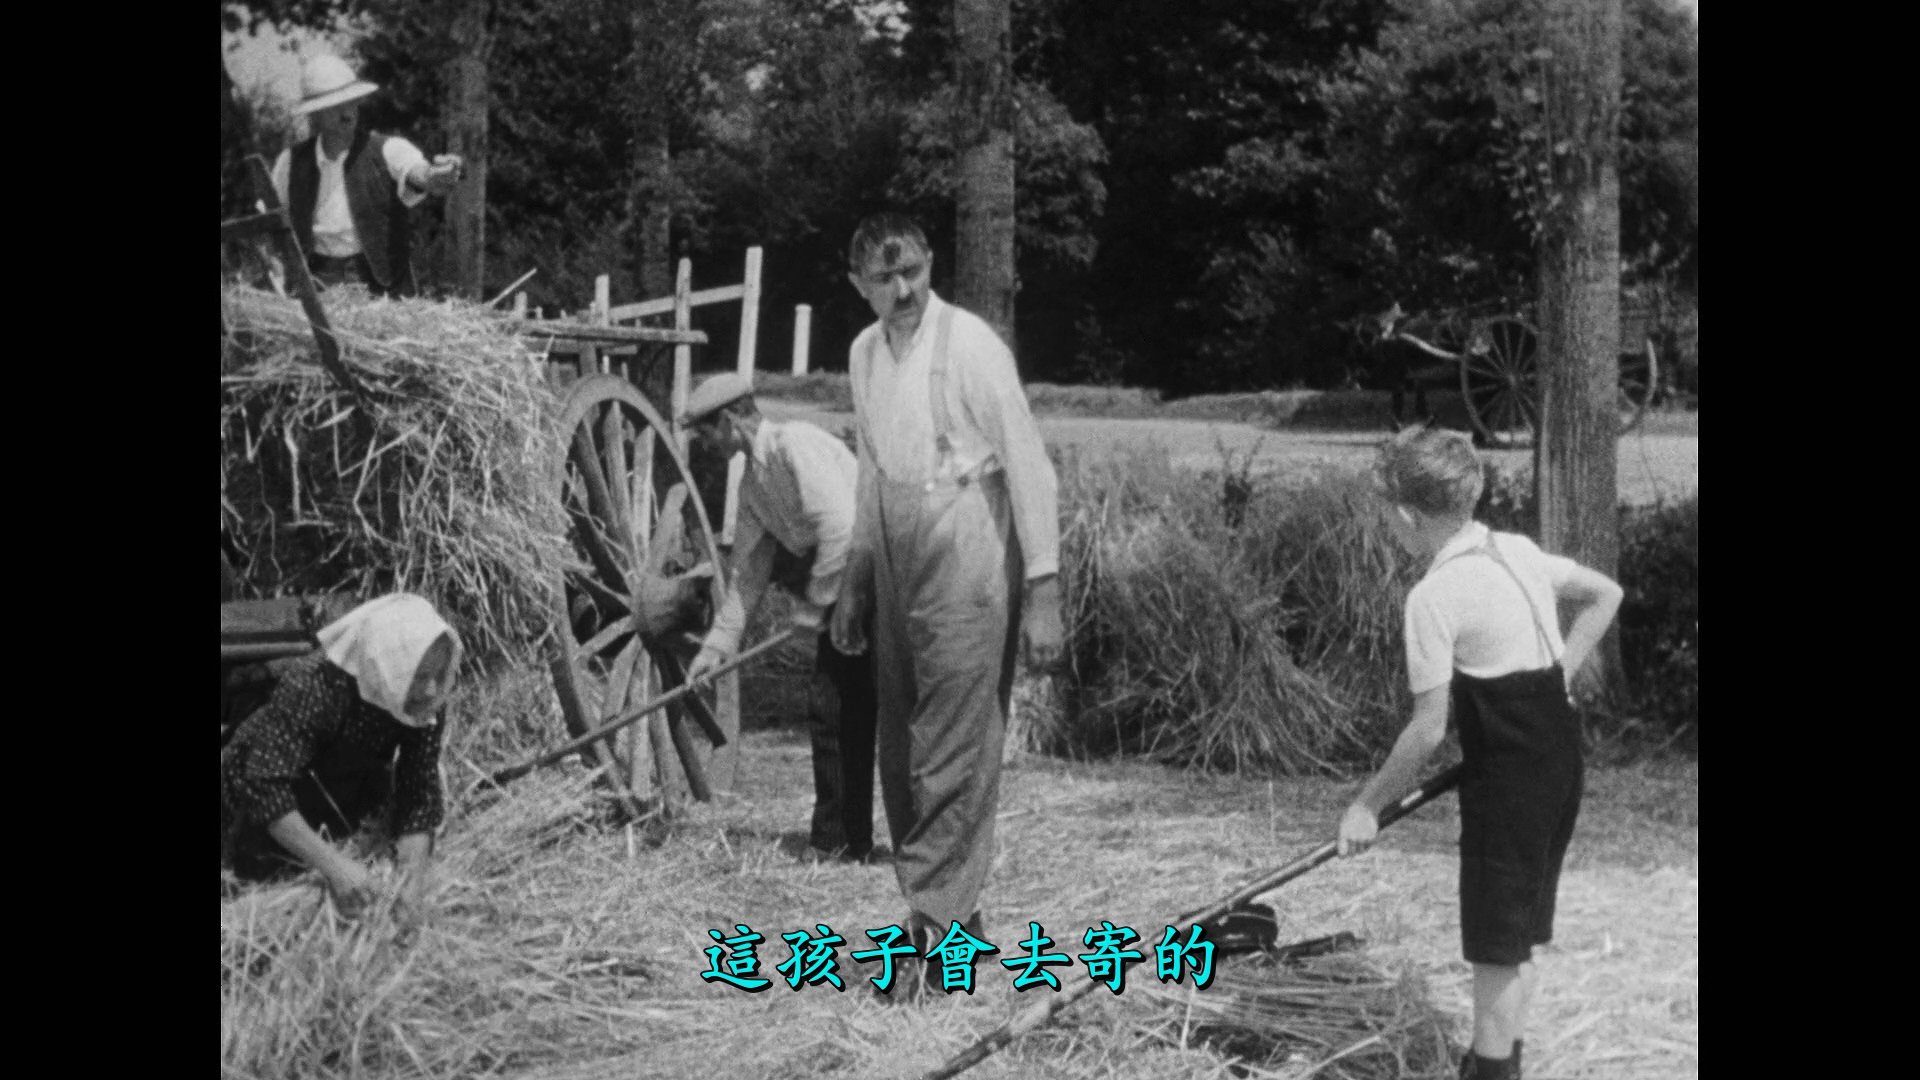 节日/Holiday[DiY简繁字幕].The.Village.Fair.1949.Criterion.Collection.Blu-ray.1080p.AVC.LPCM.1.0-DiY@TAG 46.55GB-12.jpg